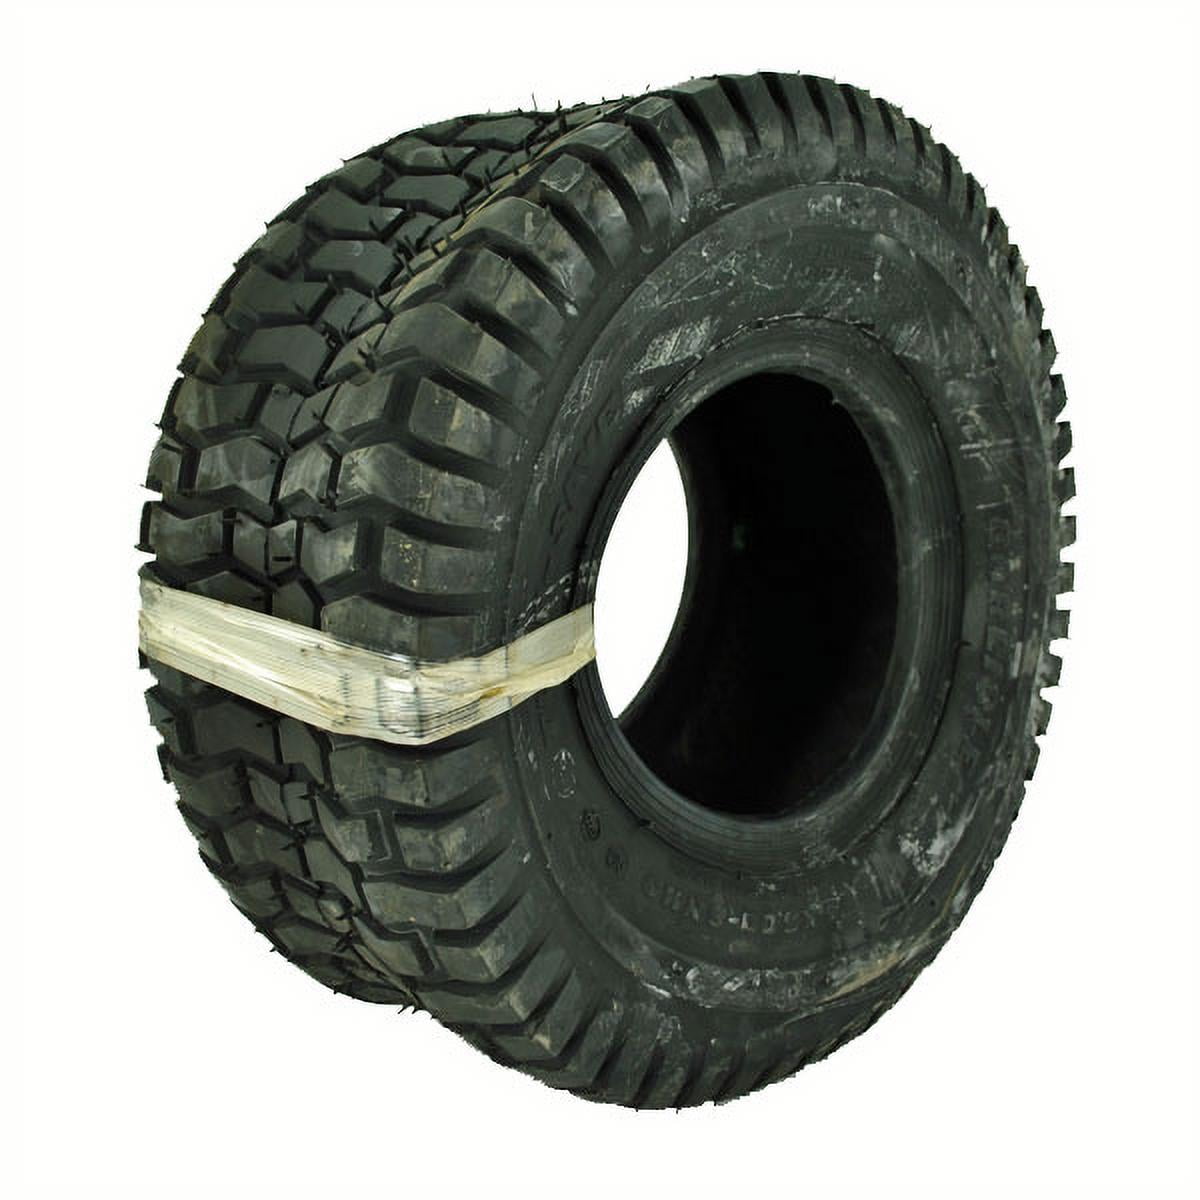 John Deere D130 20x10.00-8 Tire Chains